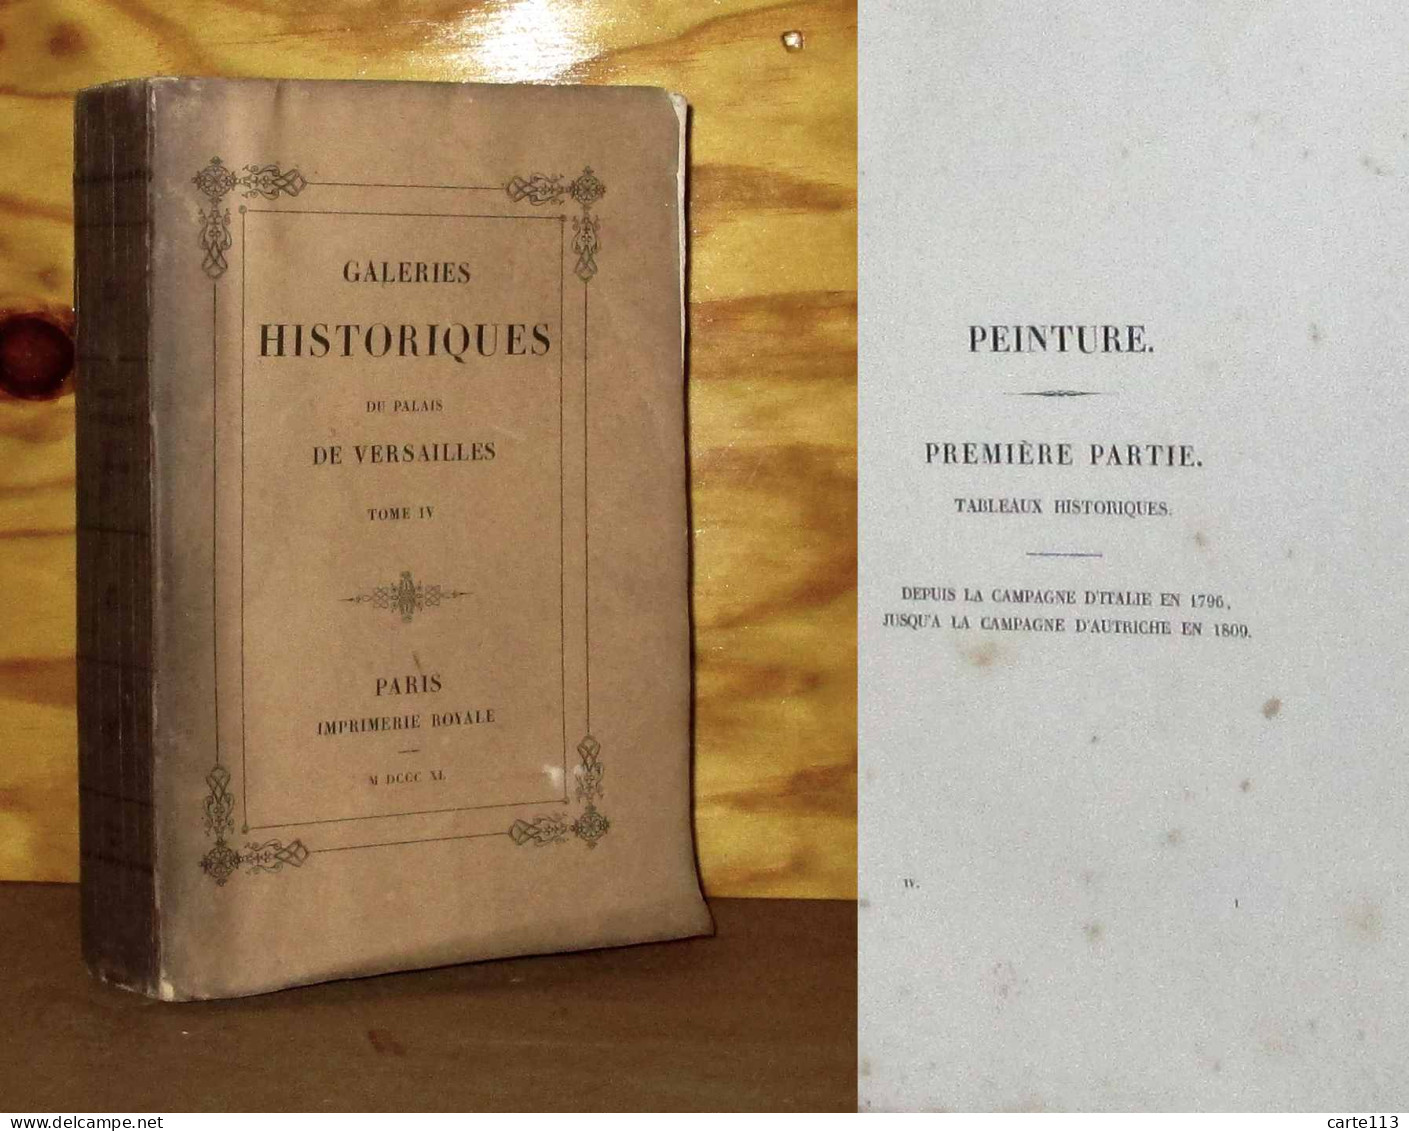 GAVARD Charles - GALERIES HISTORIQUES DU PALAIS DE VERSAILLES - TOME IV - 1801-1900